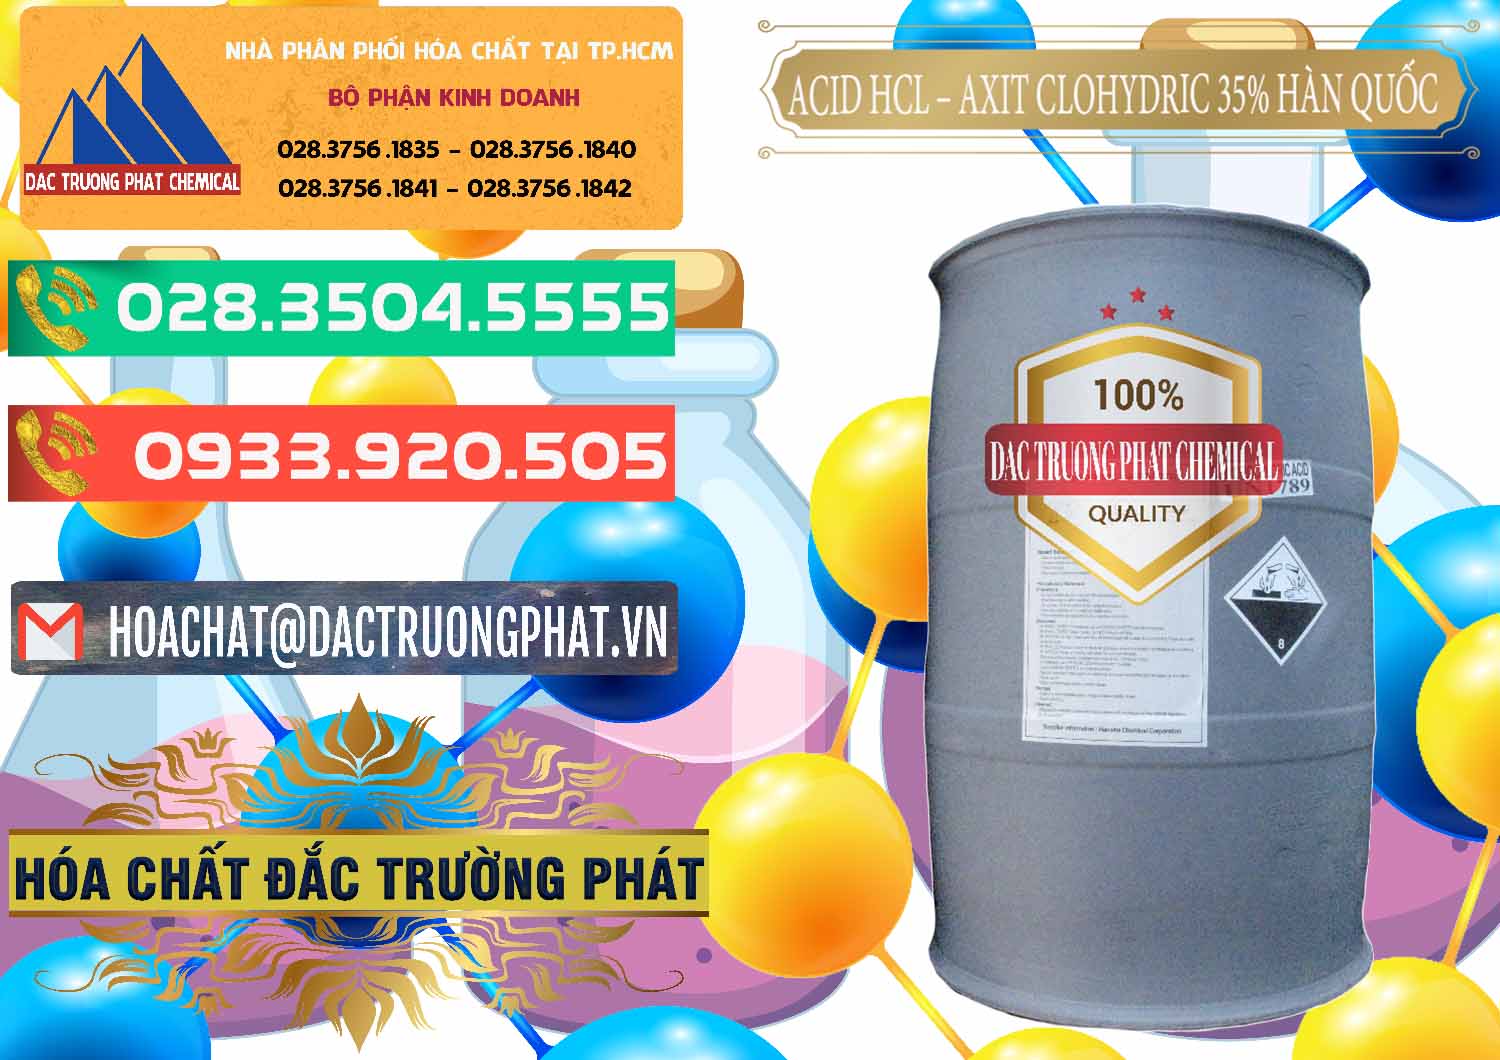 Nơi chuyên kinh doanh _ bán Acid HCL - Axit Cohidric 35% Hàn Quốc Korea - 0011 - Cty phân phối và kinh doanh hóa chất tại TP.HCM - congtyhoachat.com.vn